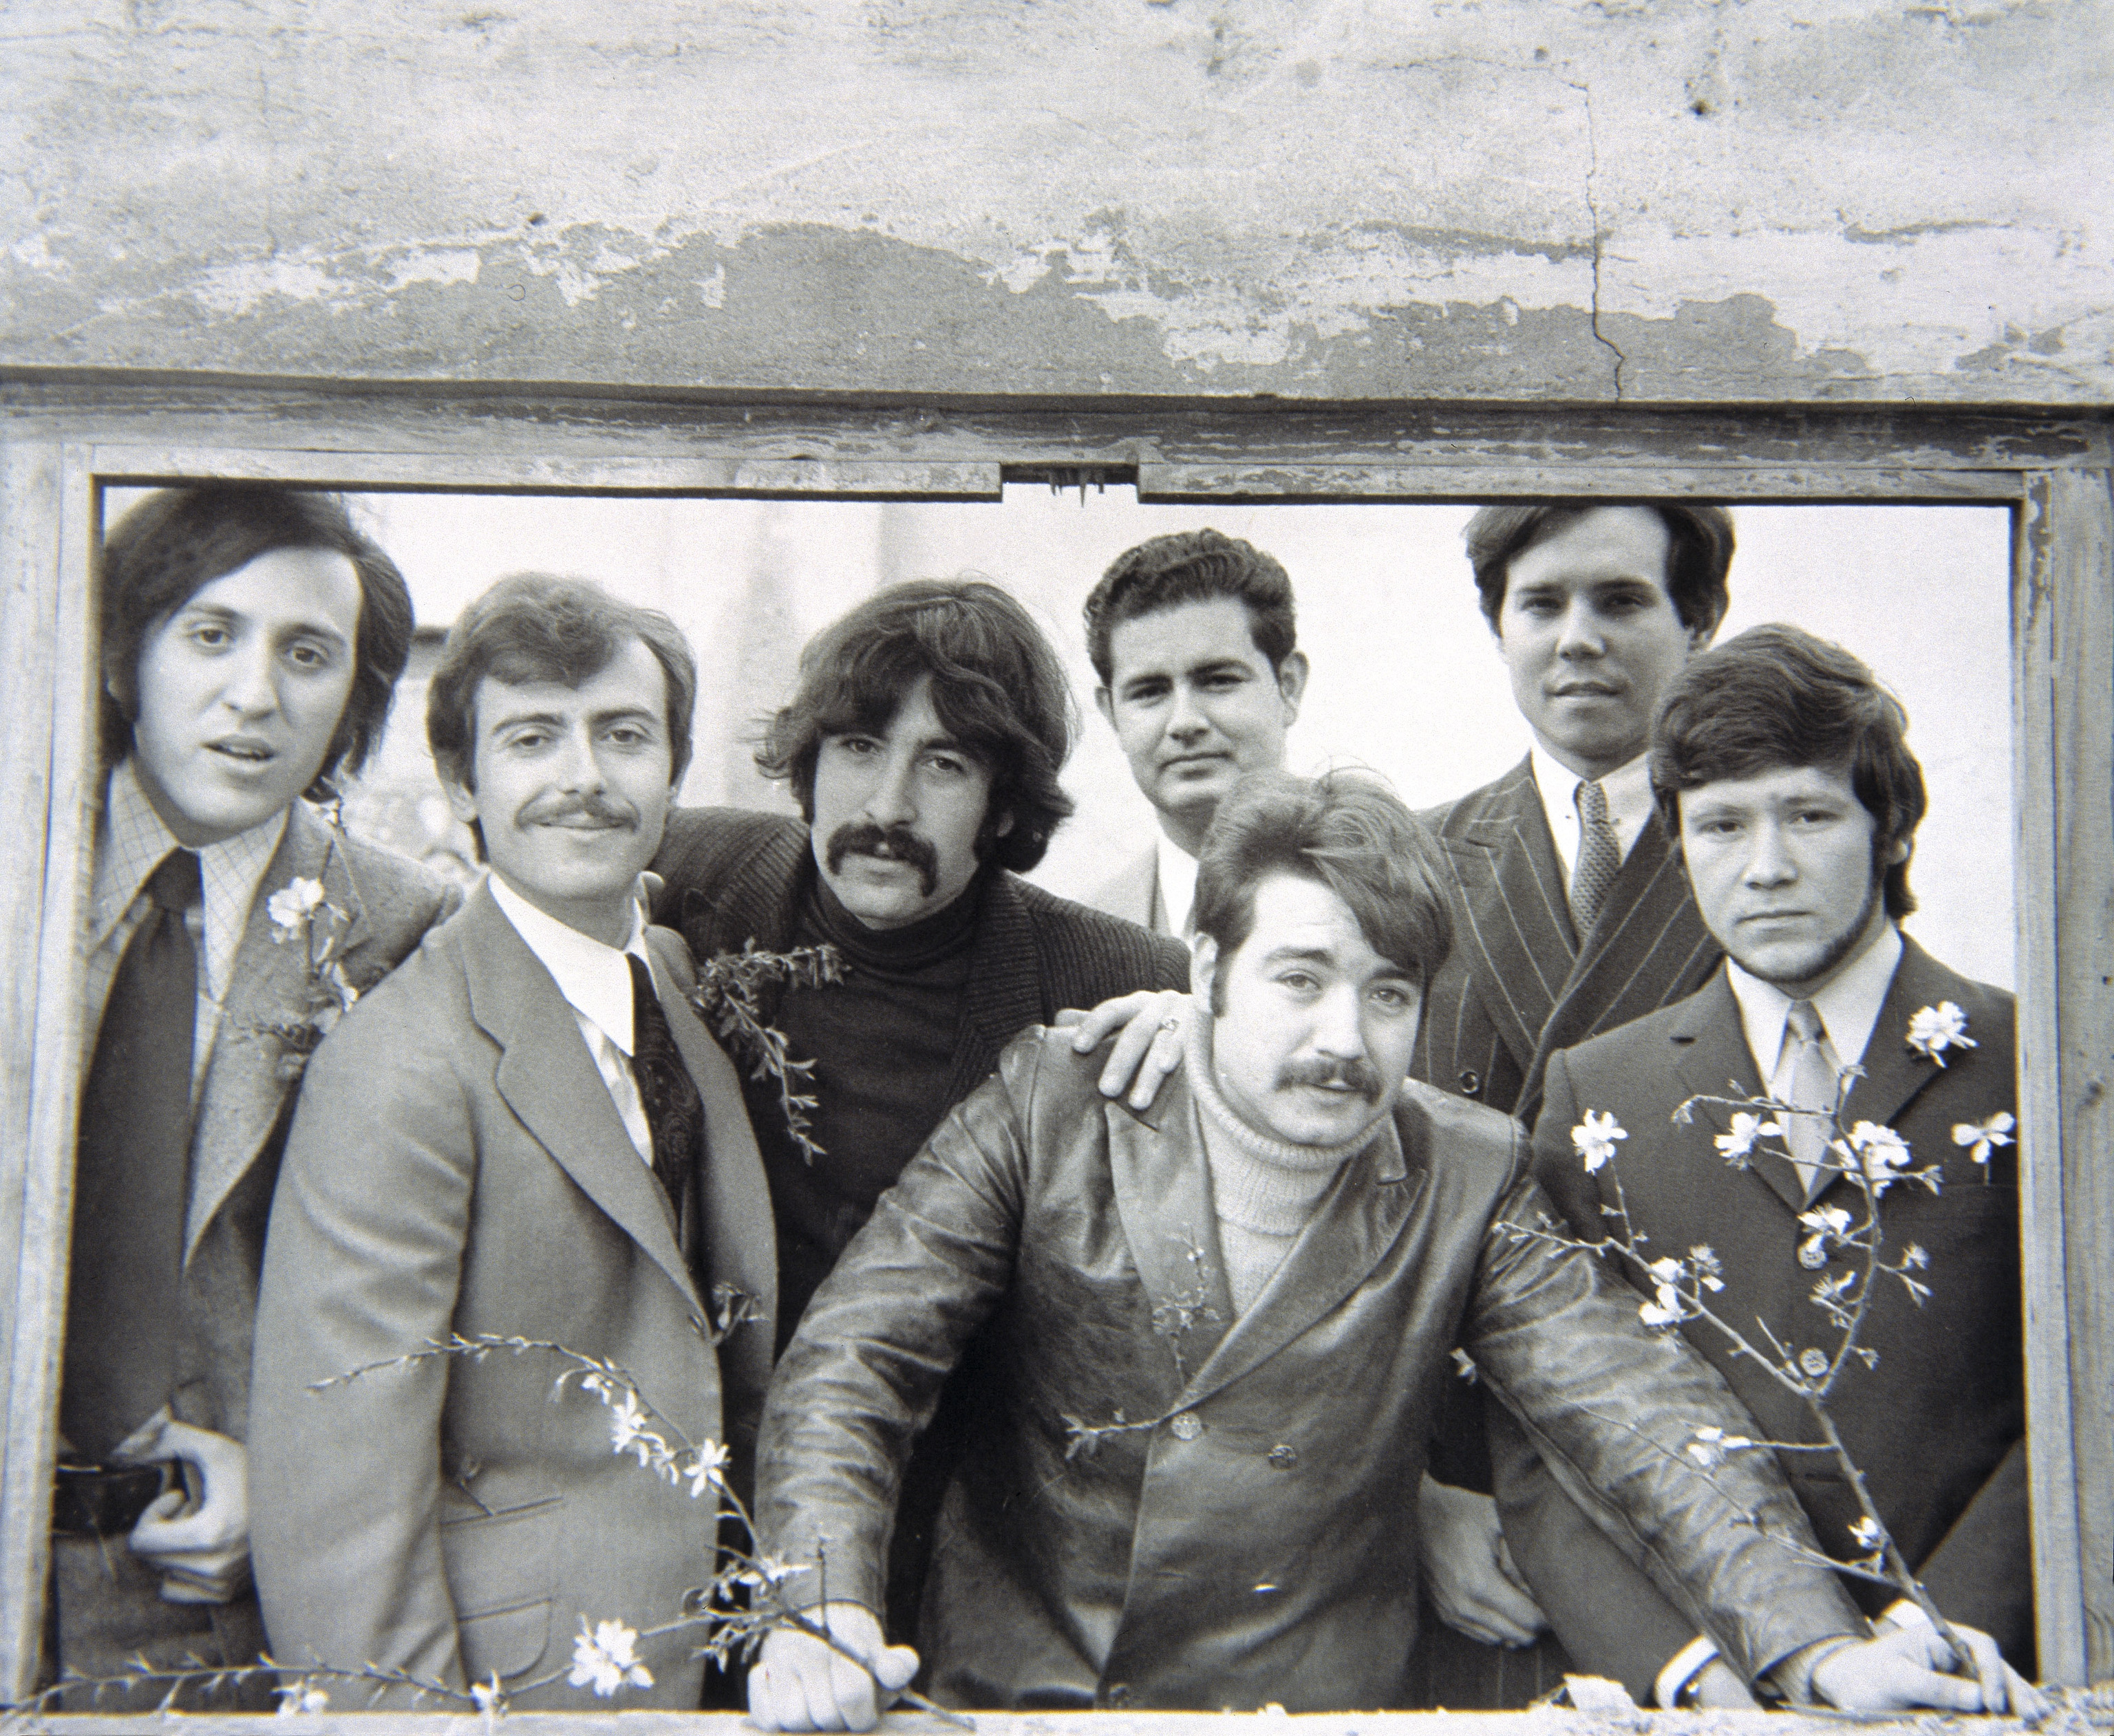 Juan Jiménez, tercero por la izquierda, con bigote chicano.